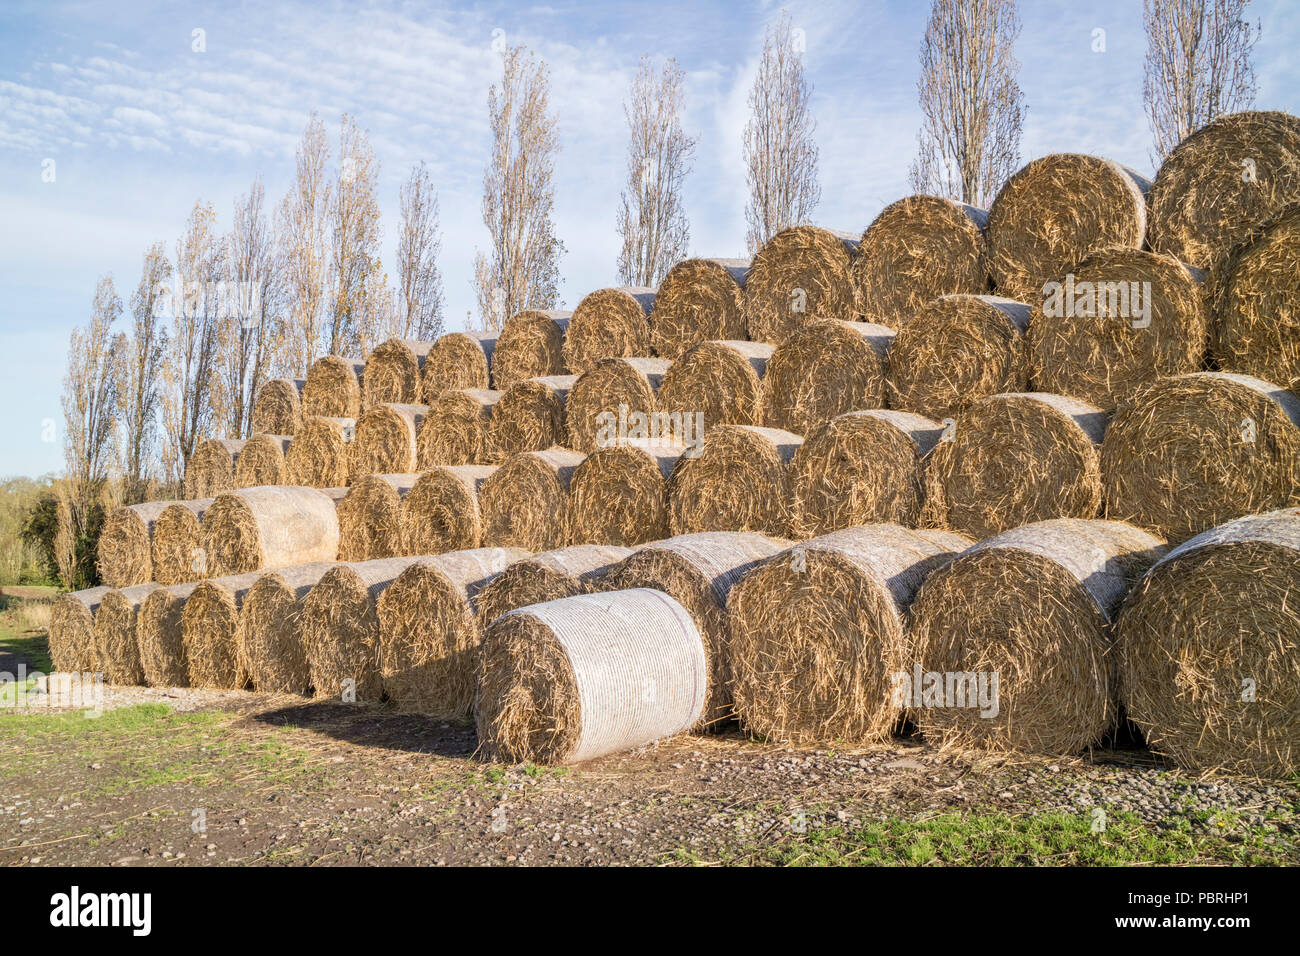 Silaggio stoccato per l'inverno di alimenti per il bestiame, England, Regno Unito Foto Stock